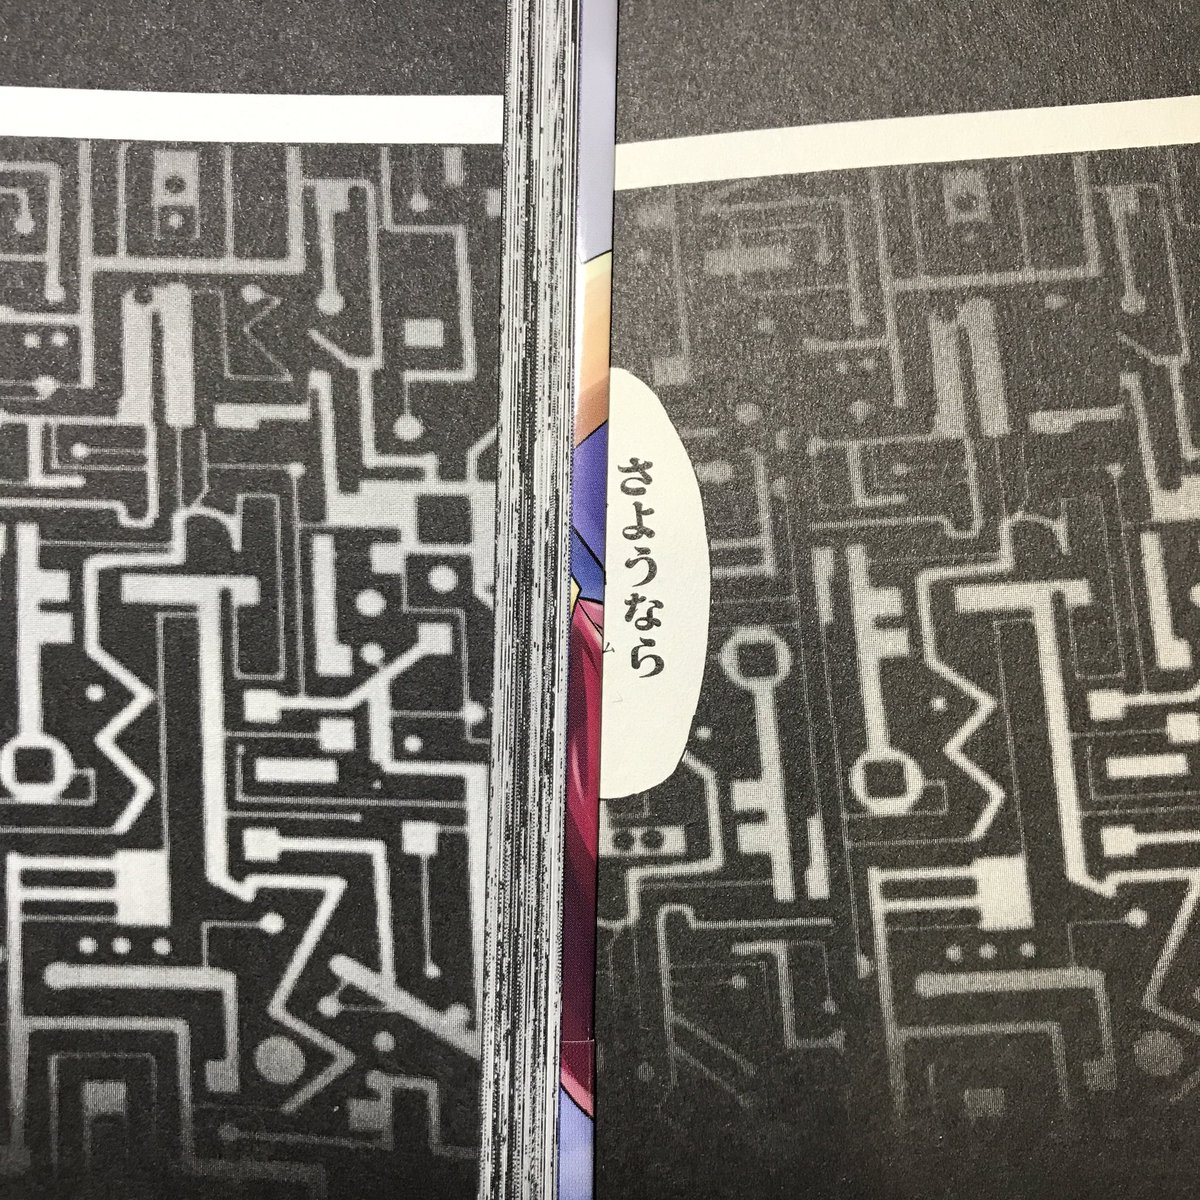 ガンダムX単行本 デジタルリマスタースキャンとの比較。
右はGレジェンドコミックス版。
トーンの黒つぶれが抑えられてより生原稿に近い印刷になりました。読みやすいです♪ 